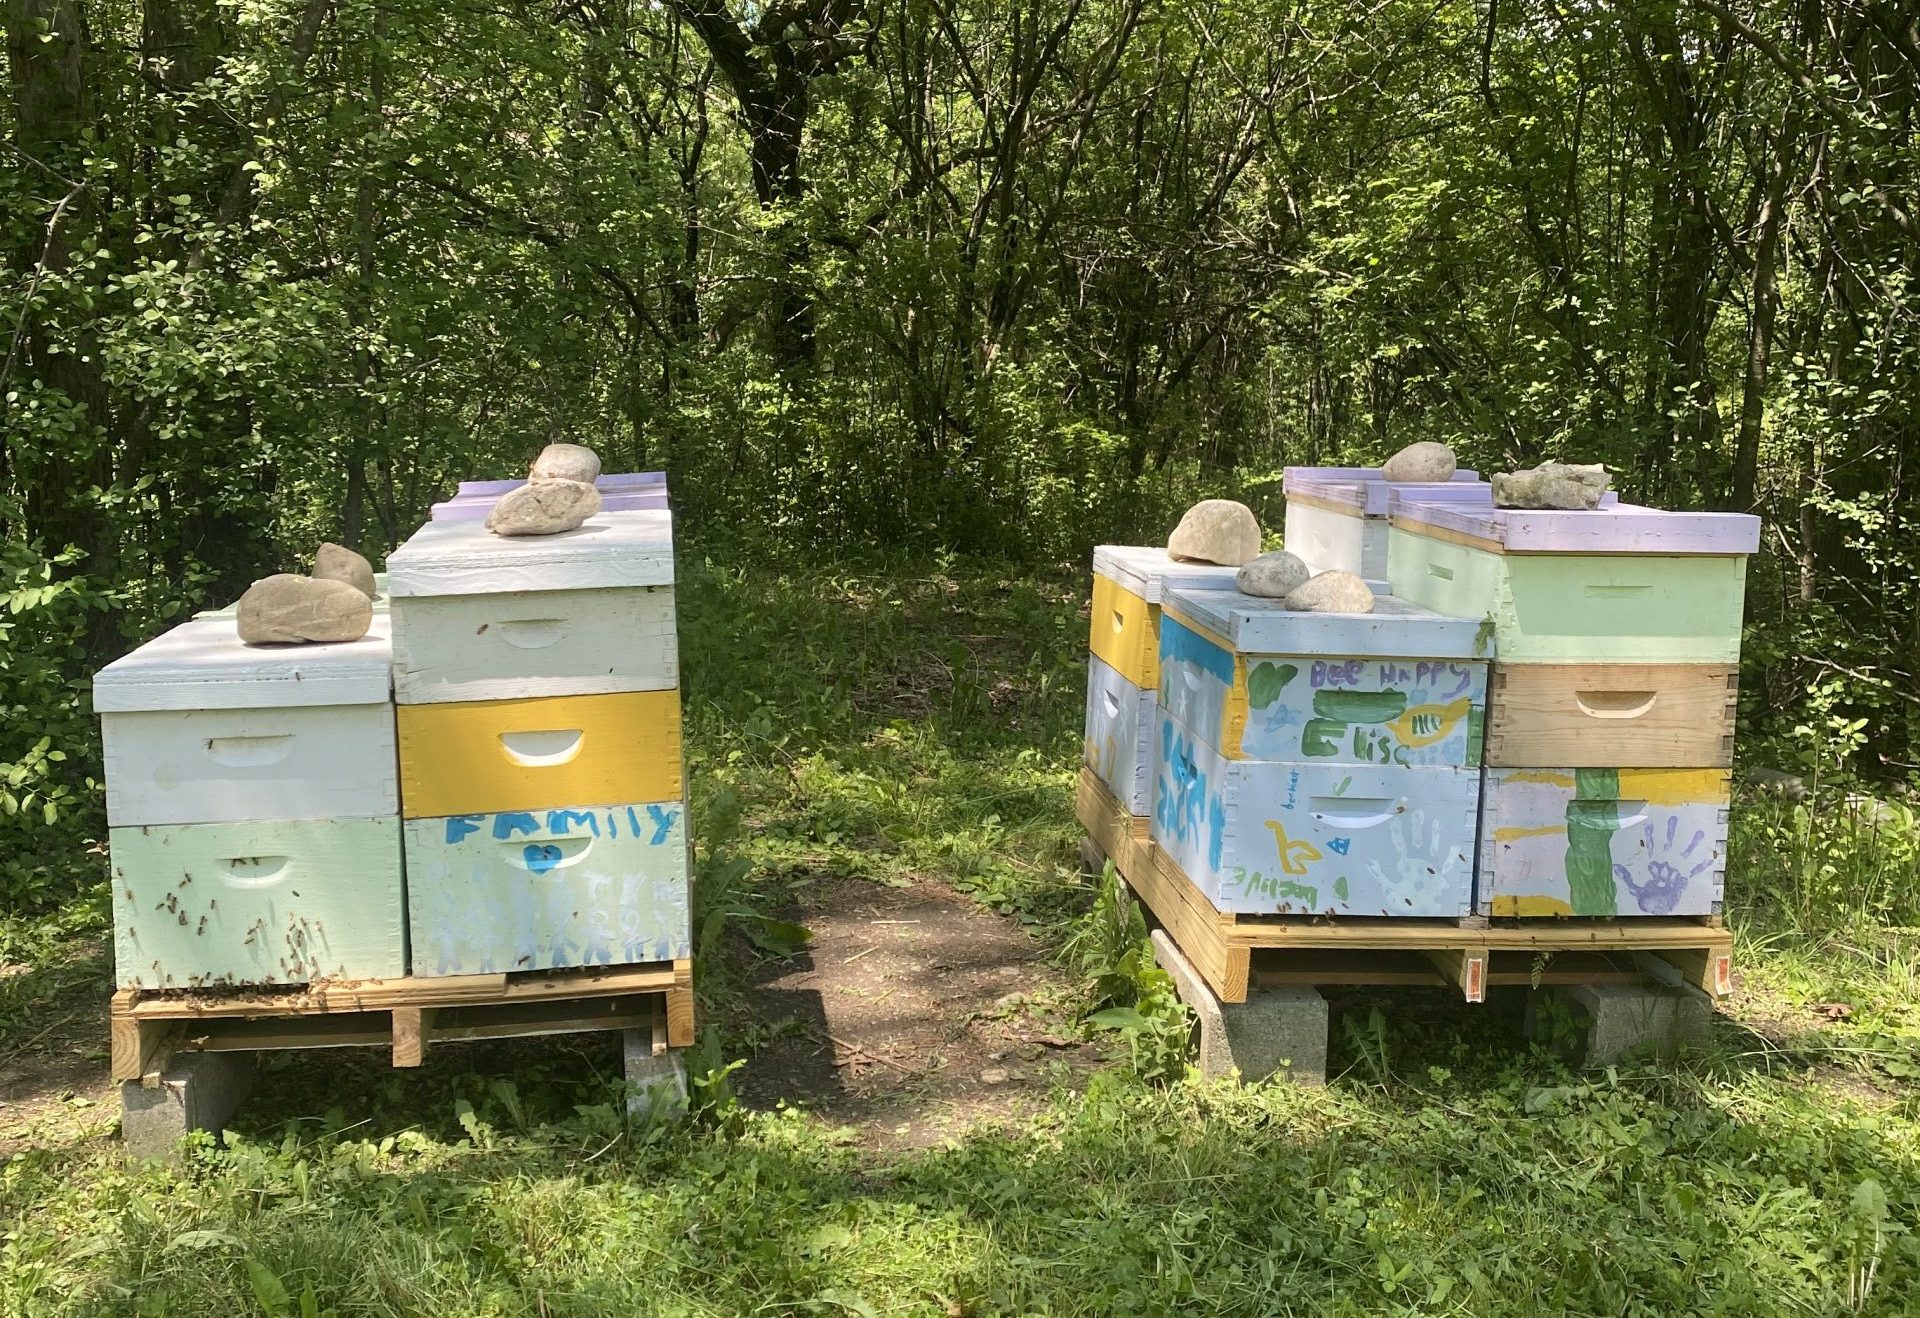 Wales Hives